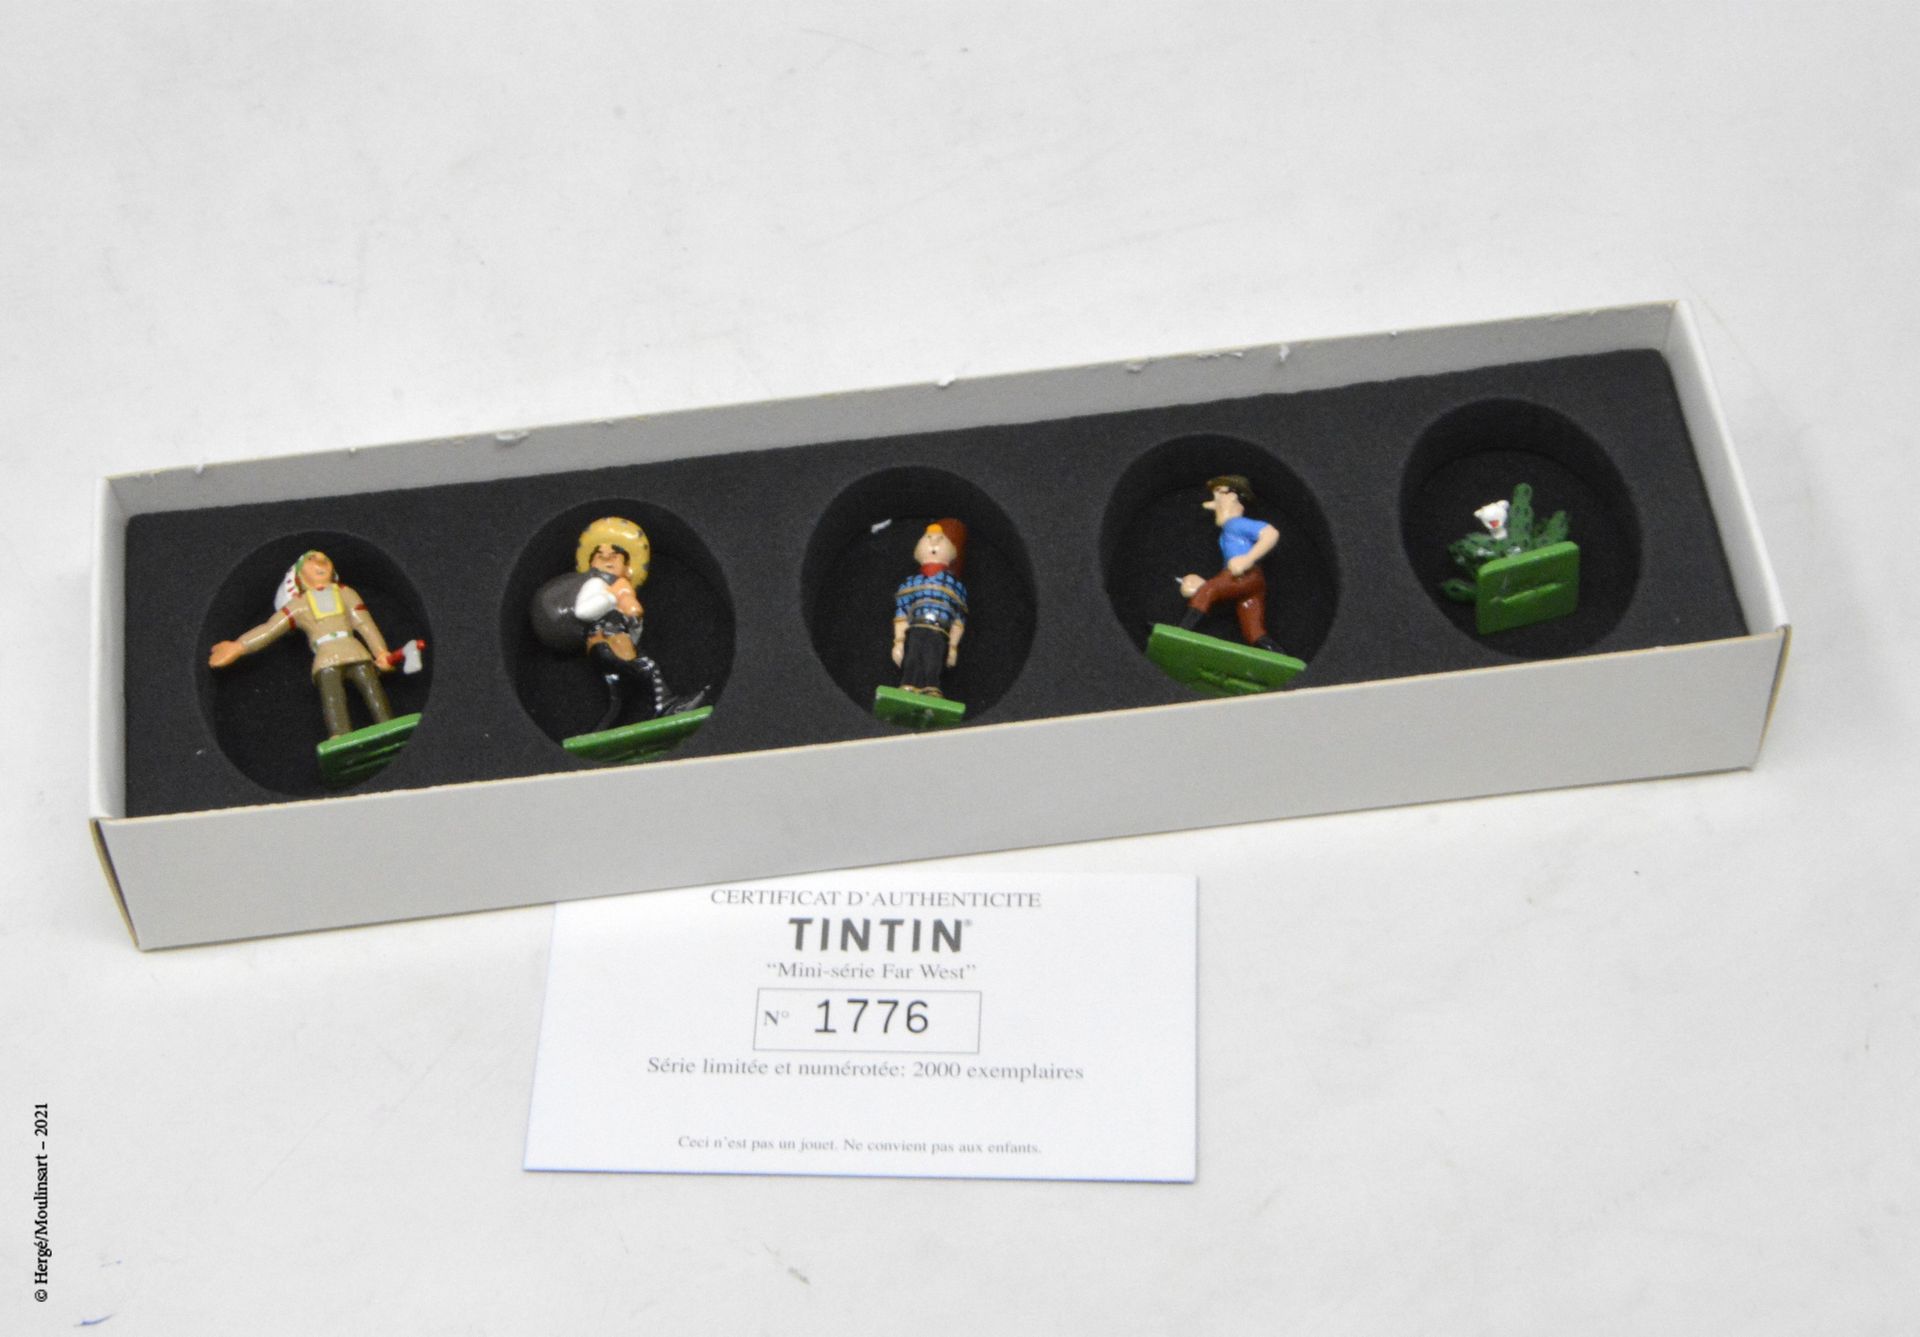 Tintin en Amérique HERGÉ/MOULINSART

Hergé : Mini/2nd Collection Moulinsart Lead&hellip;